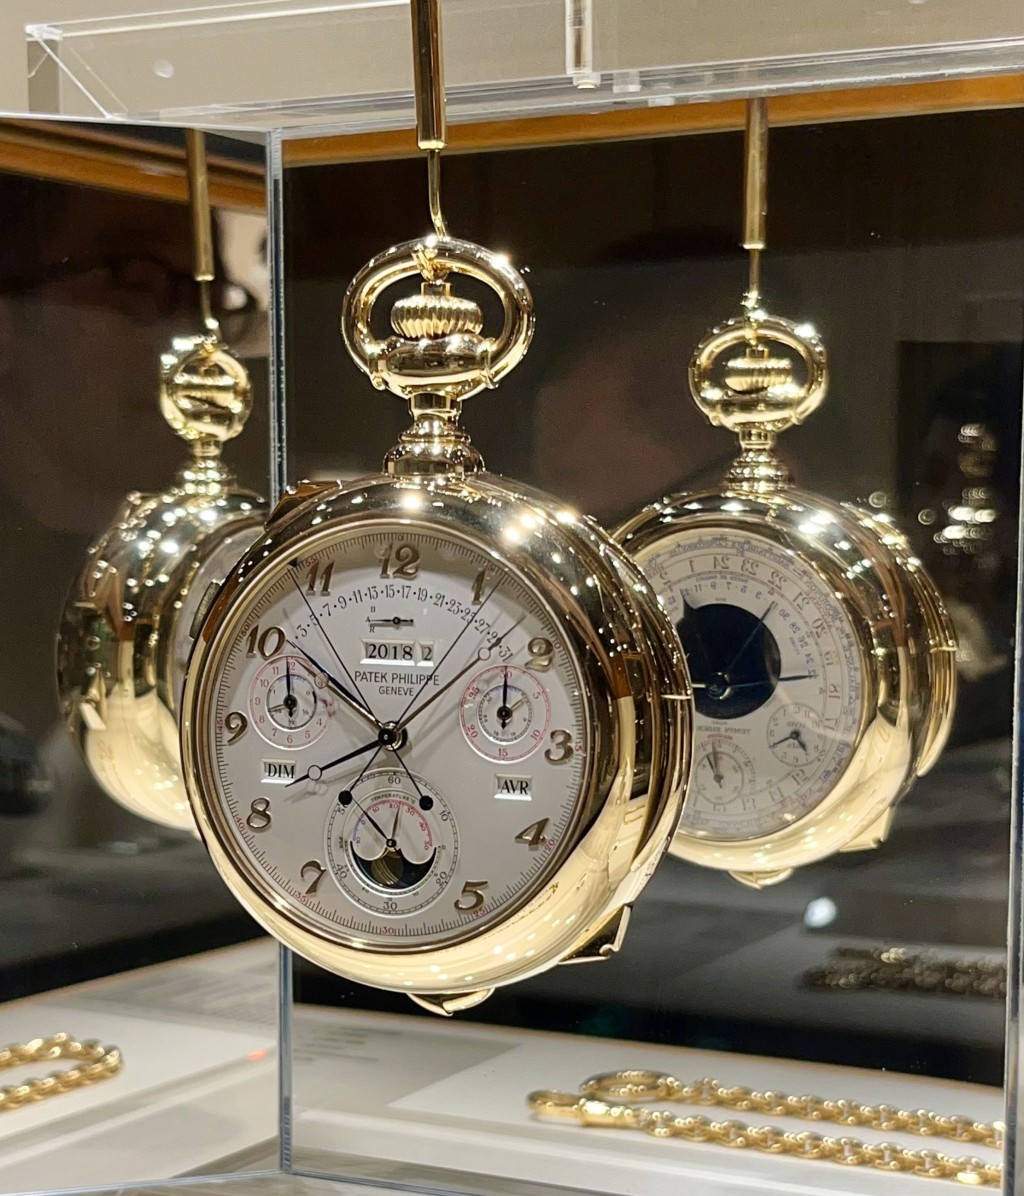 1989年推出的百達翡麗Calibre 89，是為慶祝150周年而創製的複雜功能懷錶，當時以共有33項複雜功能而成為世上最複雜時計，現時仍是品牌的最複雜時計作品。